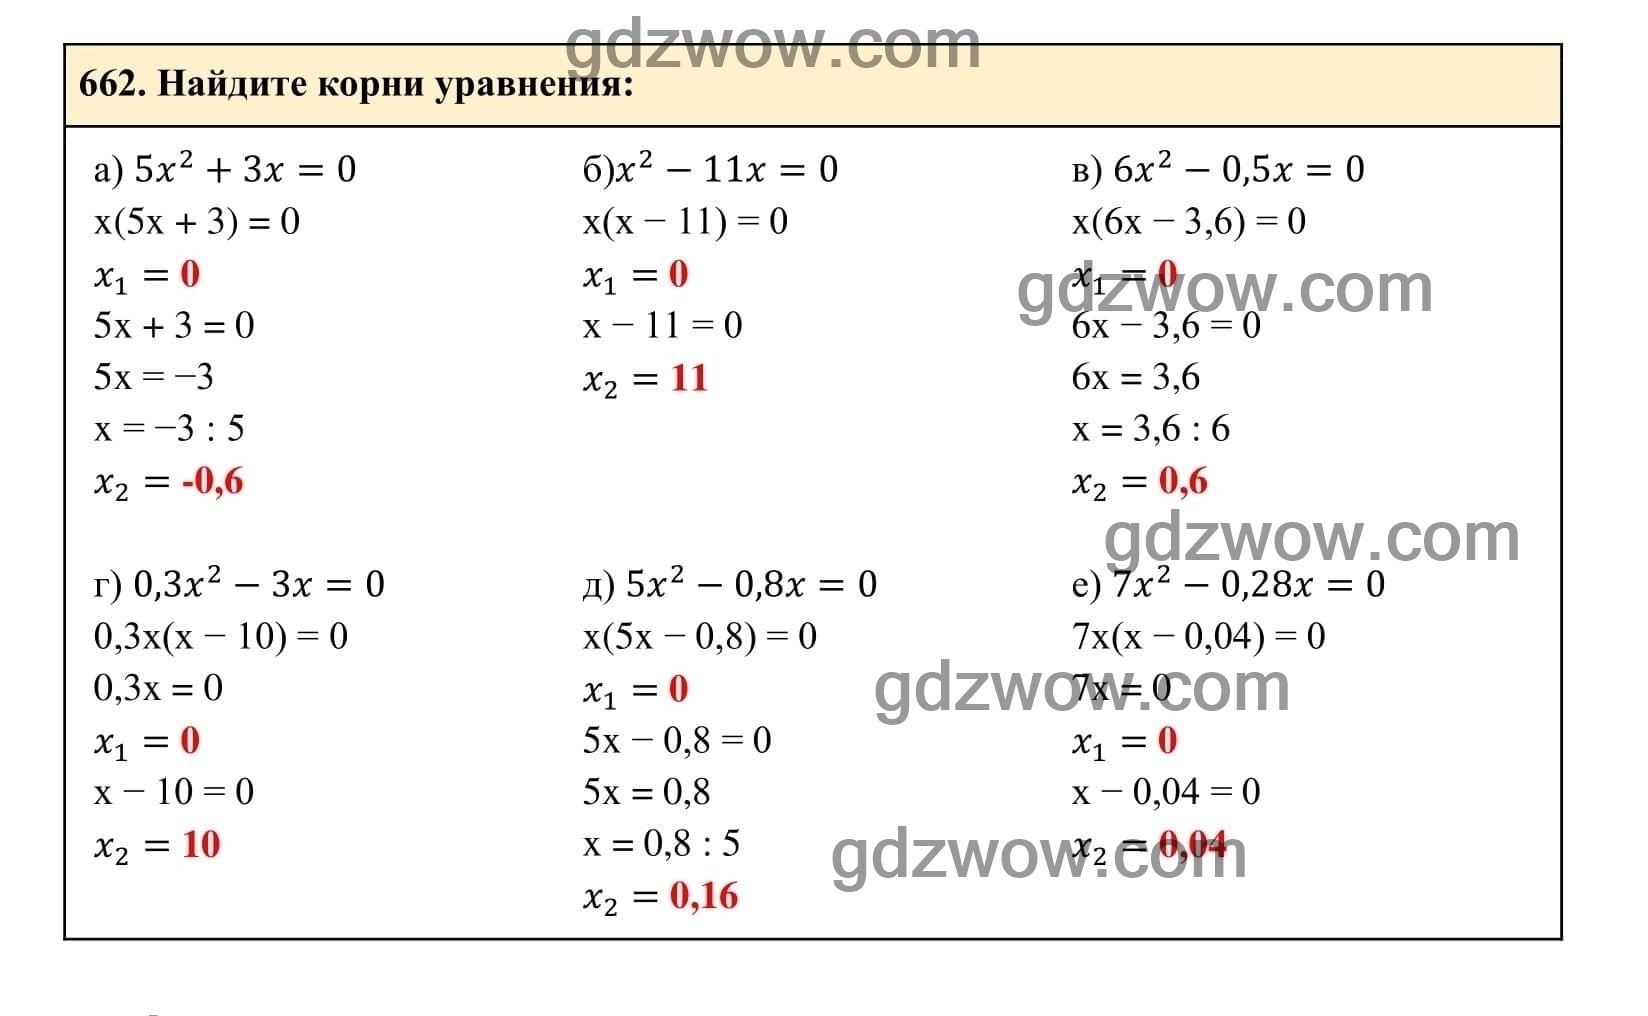 Упражнение 662 - ГДЗ по Алгебре 7 класс Учебник Макарычев (решебник) - GDZwow